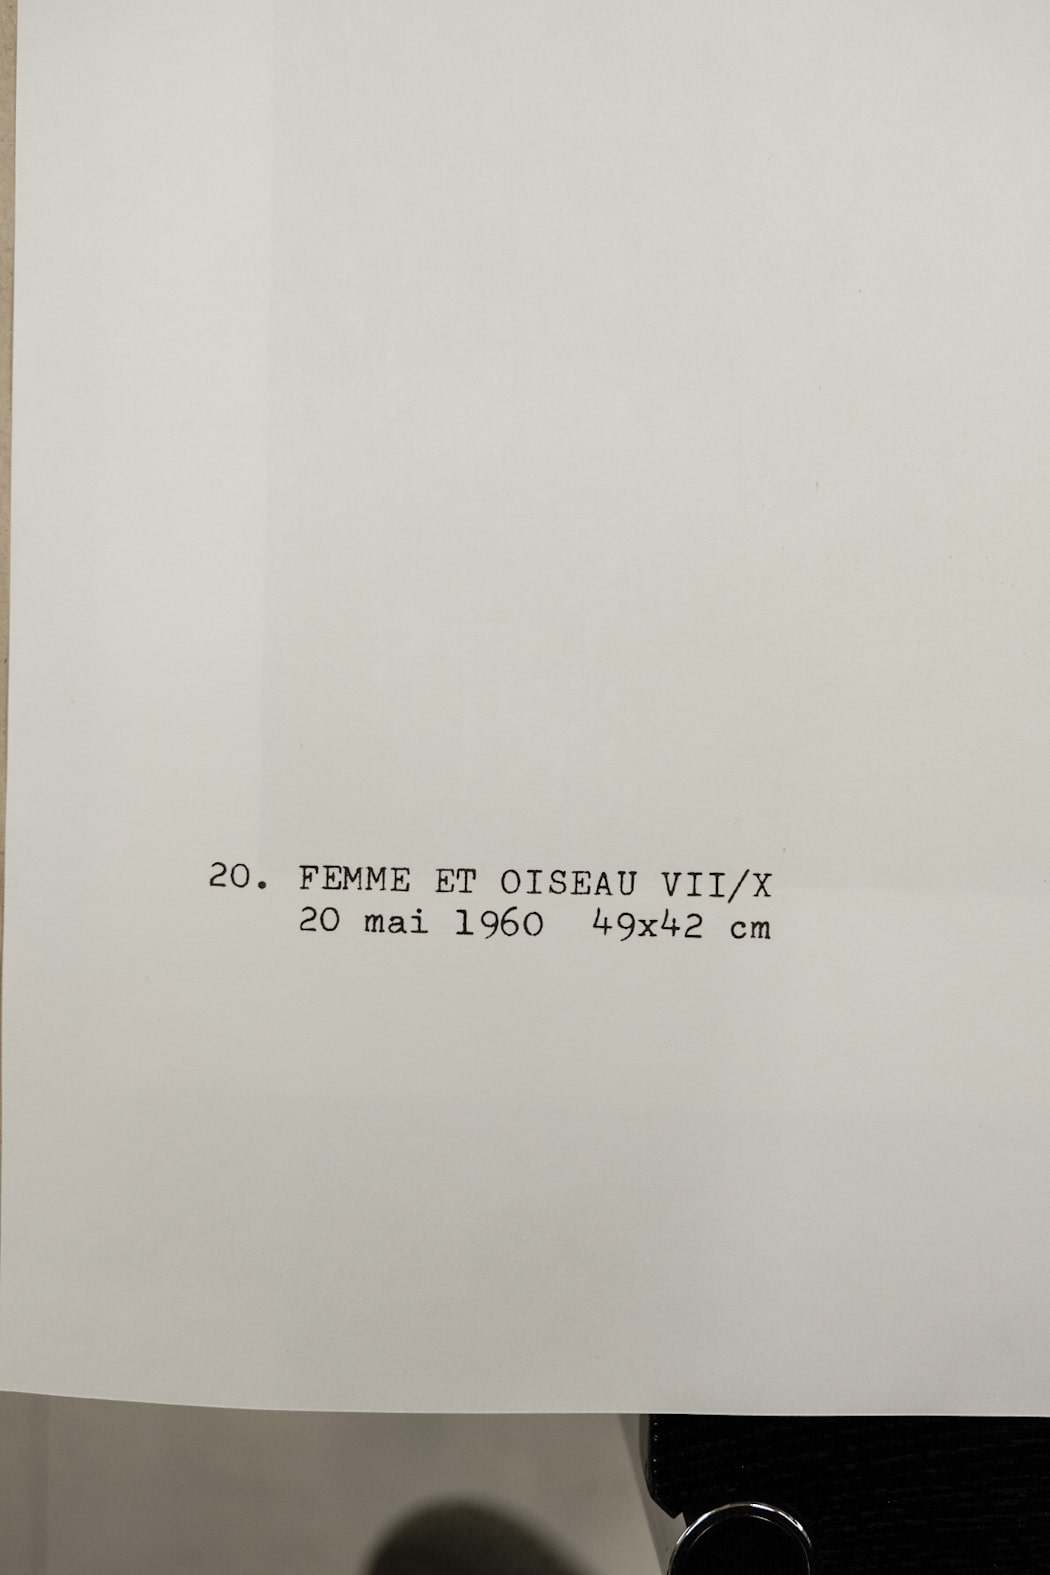 Joan Miro FEMME ET OISEAU VII/X Plate #20